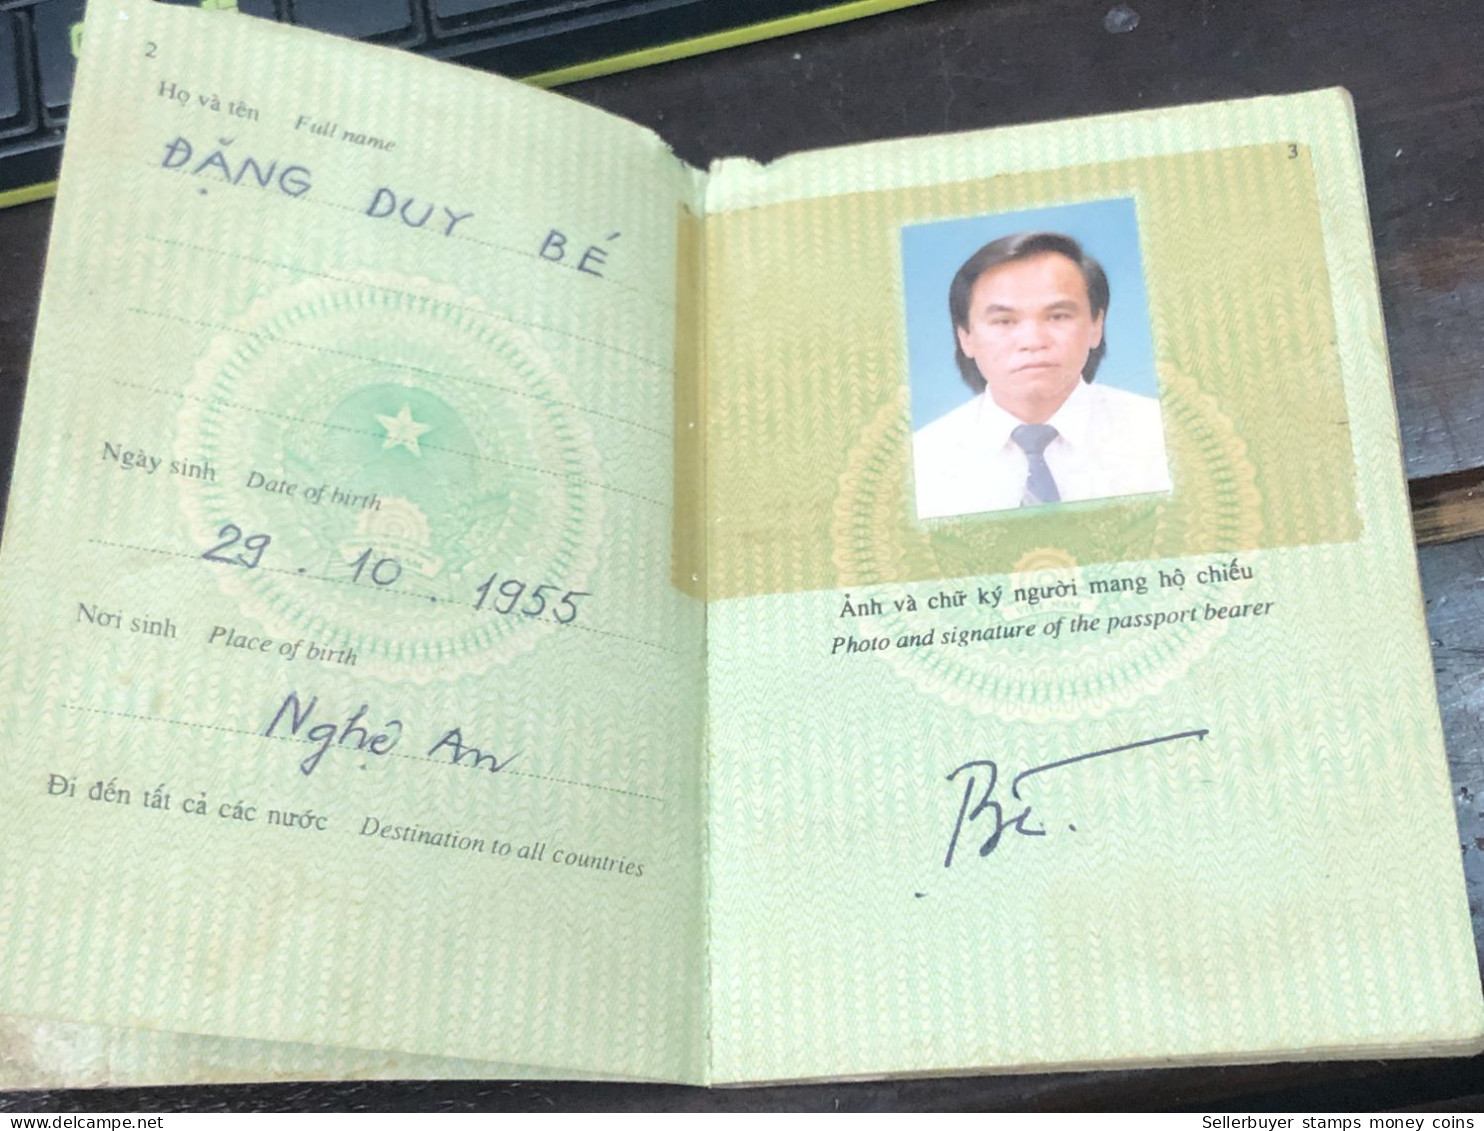 VIET NAM -OLD-ID PASSPORT-name-DANG HUY BE-2002-1pcs Book - Sammlungen